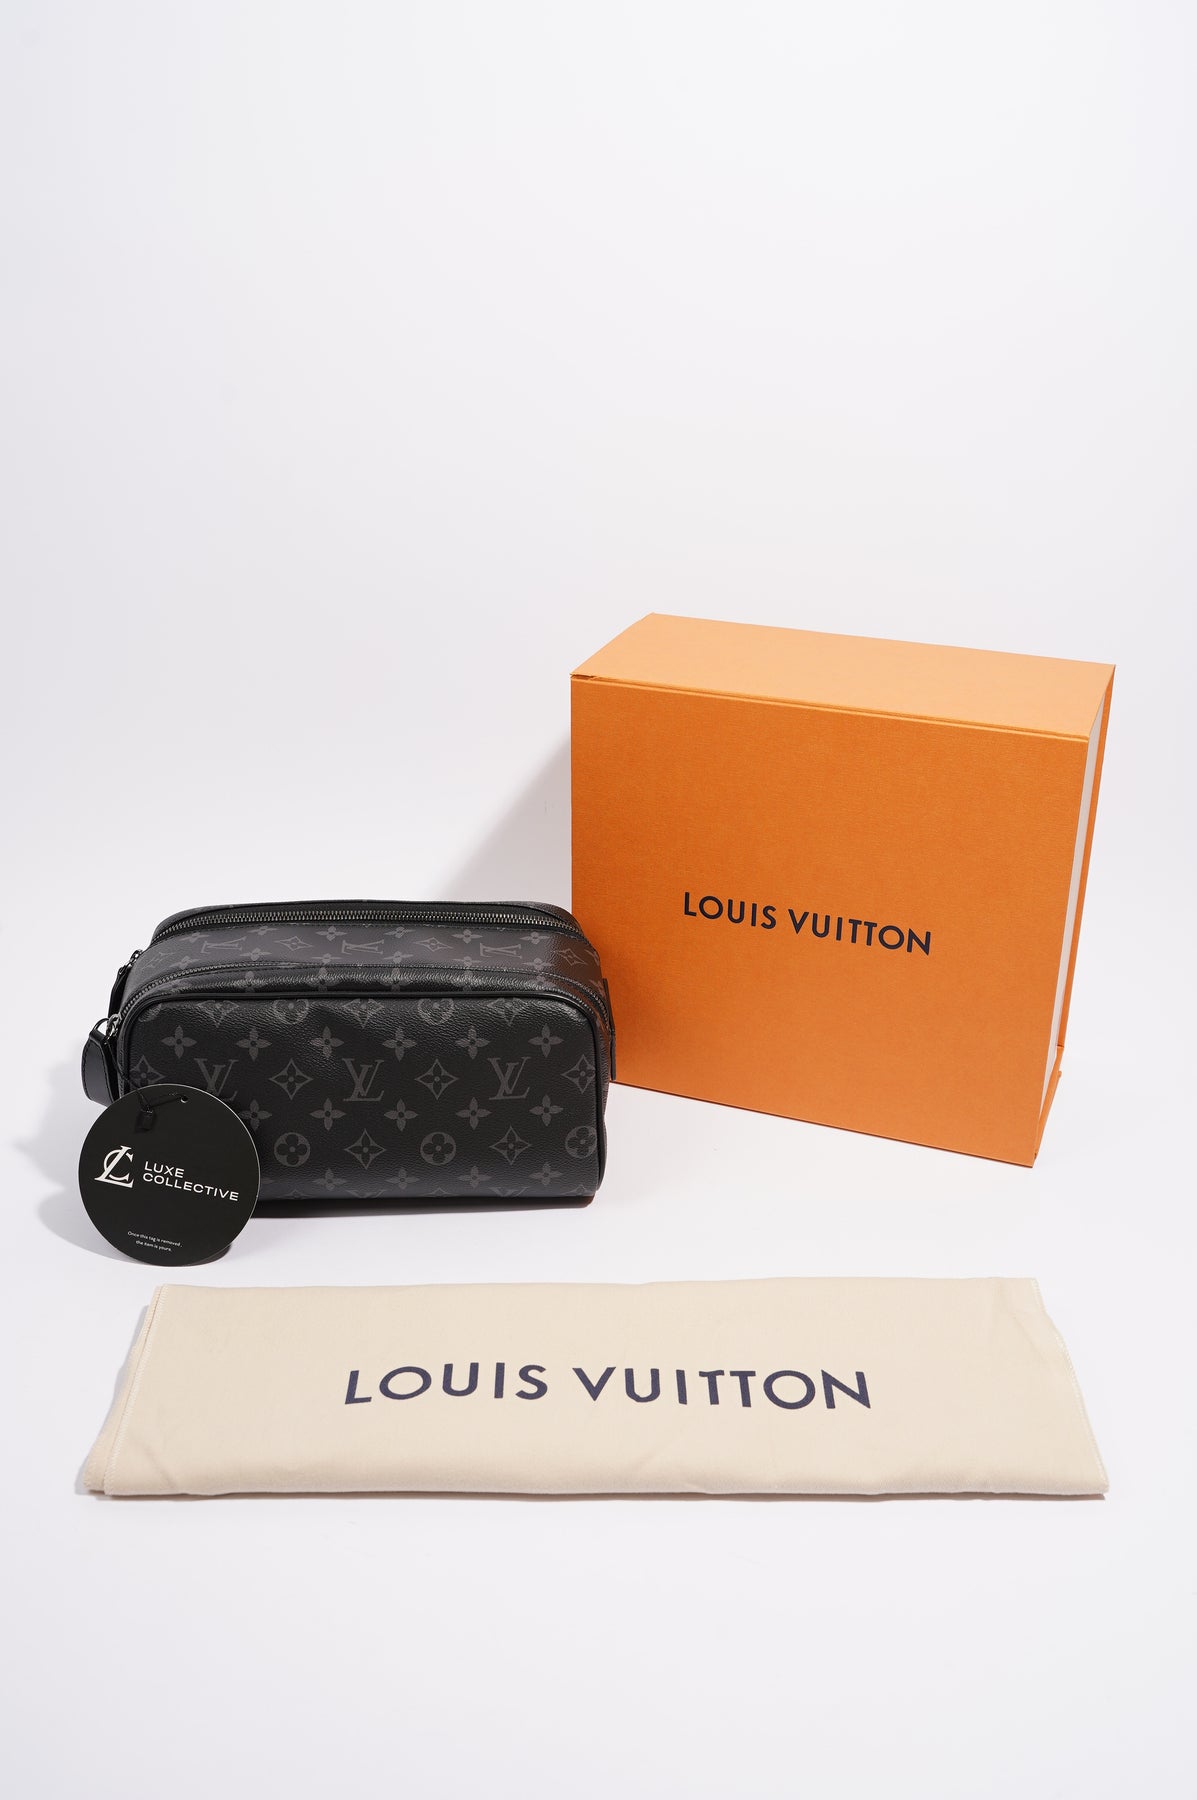 Louis Vuitton Mens Dopp Kit Toilet Pouch Monogram Eclipse – Luxe Collective